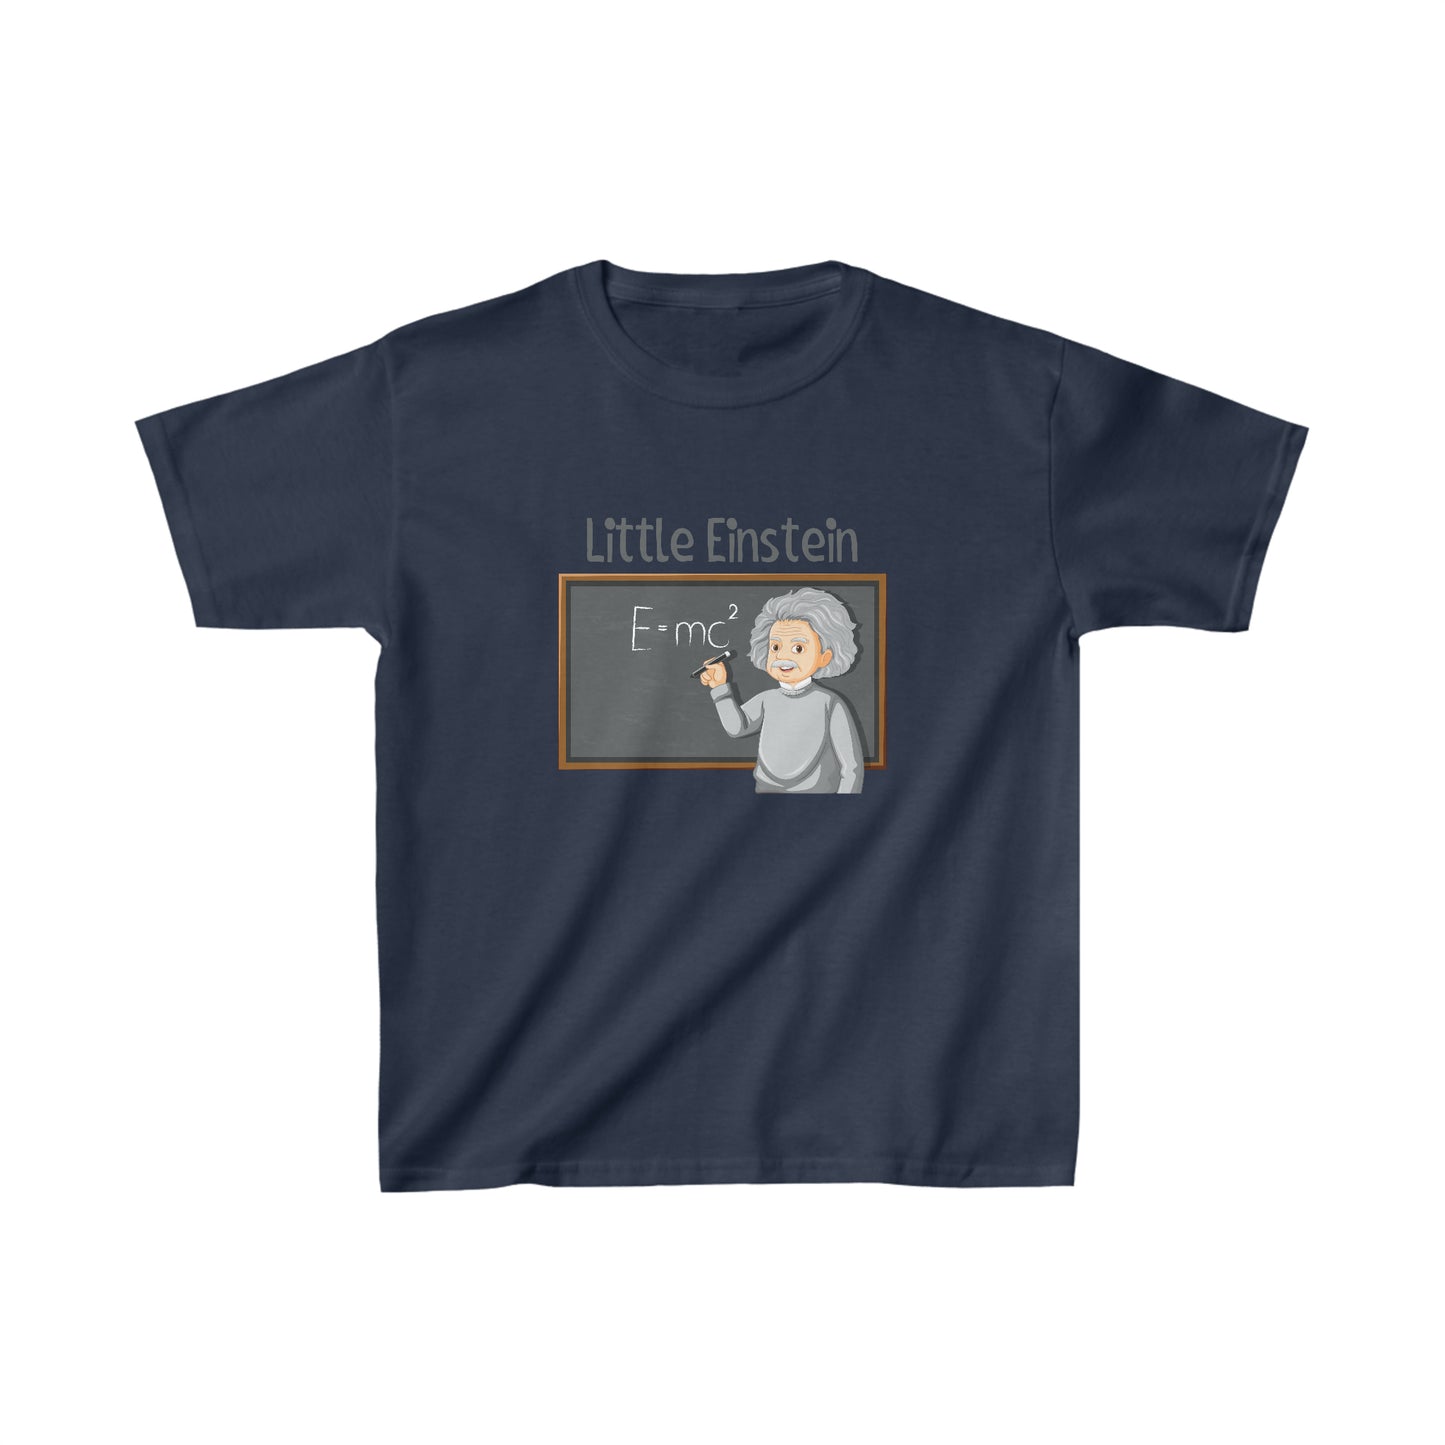 Kids Little Einstein Tee